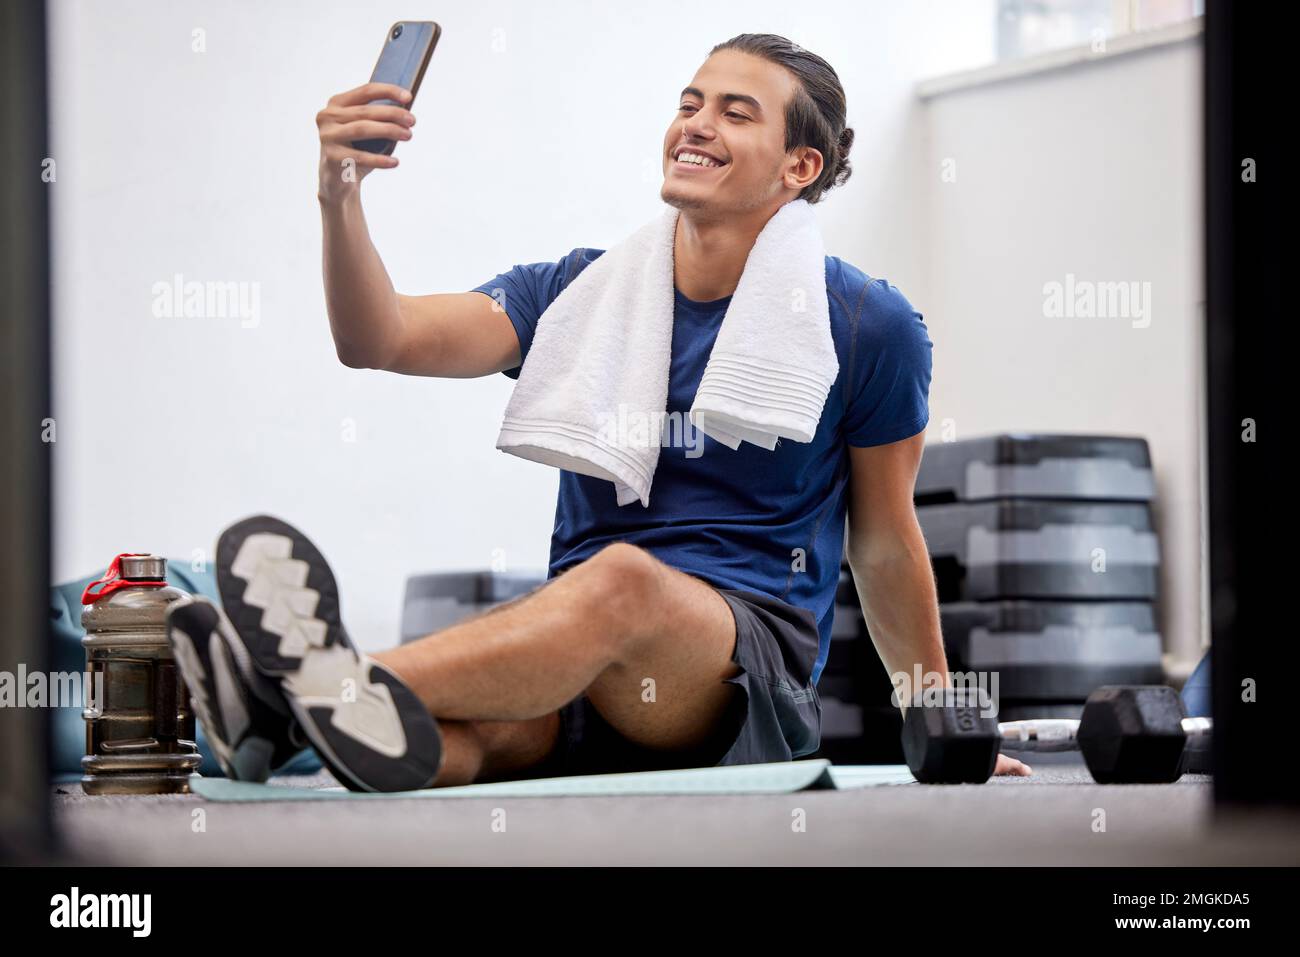 https://c8.alamy.com/compes/2mgkda5/fitness-hombre-feliz-y-selfie-para-las-redes-sociales-o-foto-de-perfil-con-toalla-despues-del-ejercicio-o-entrenamiento-en-el-gimnasio-vlogger-masculino-deportivo-o-2mgkda5.jpg